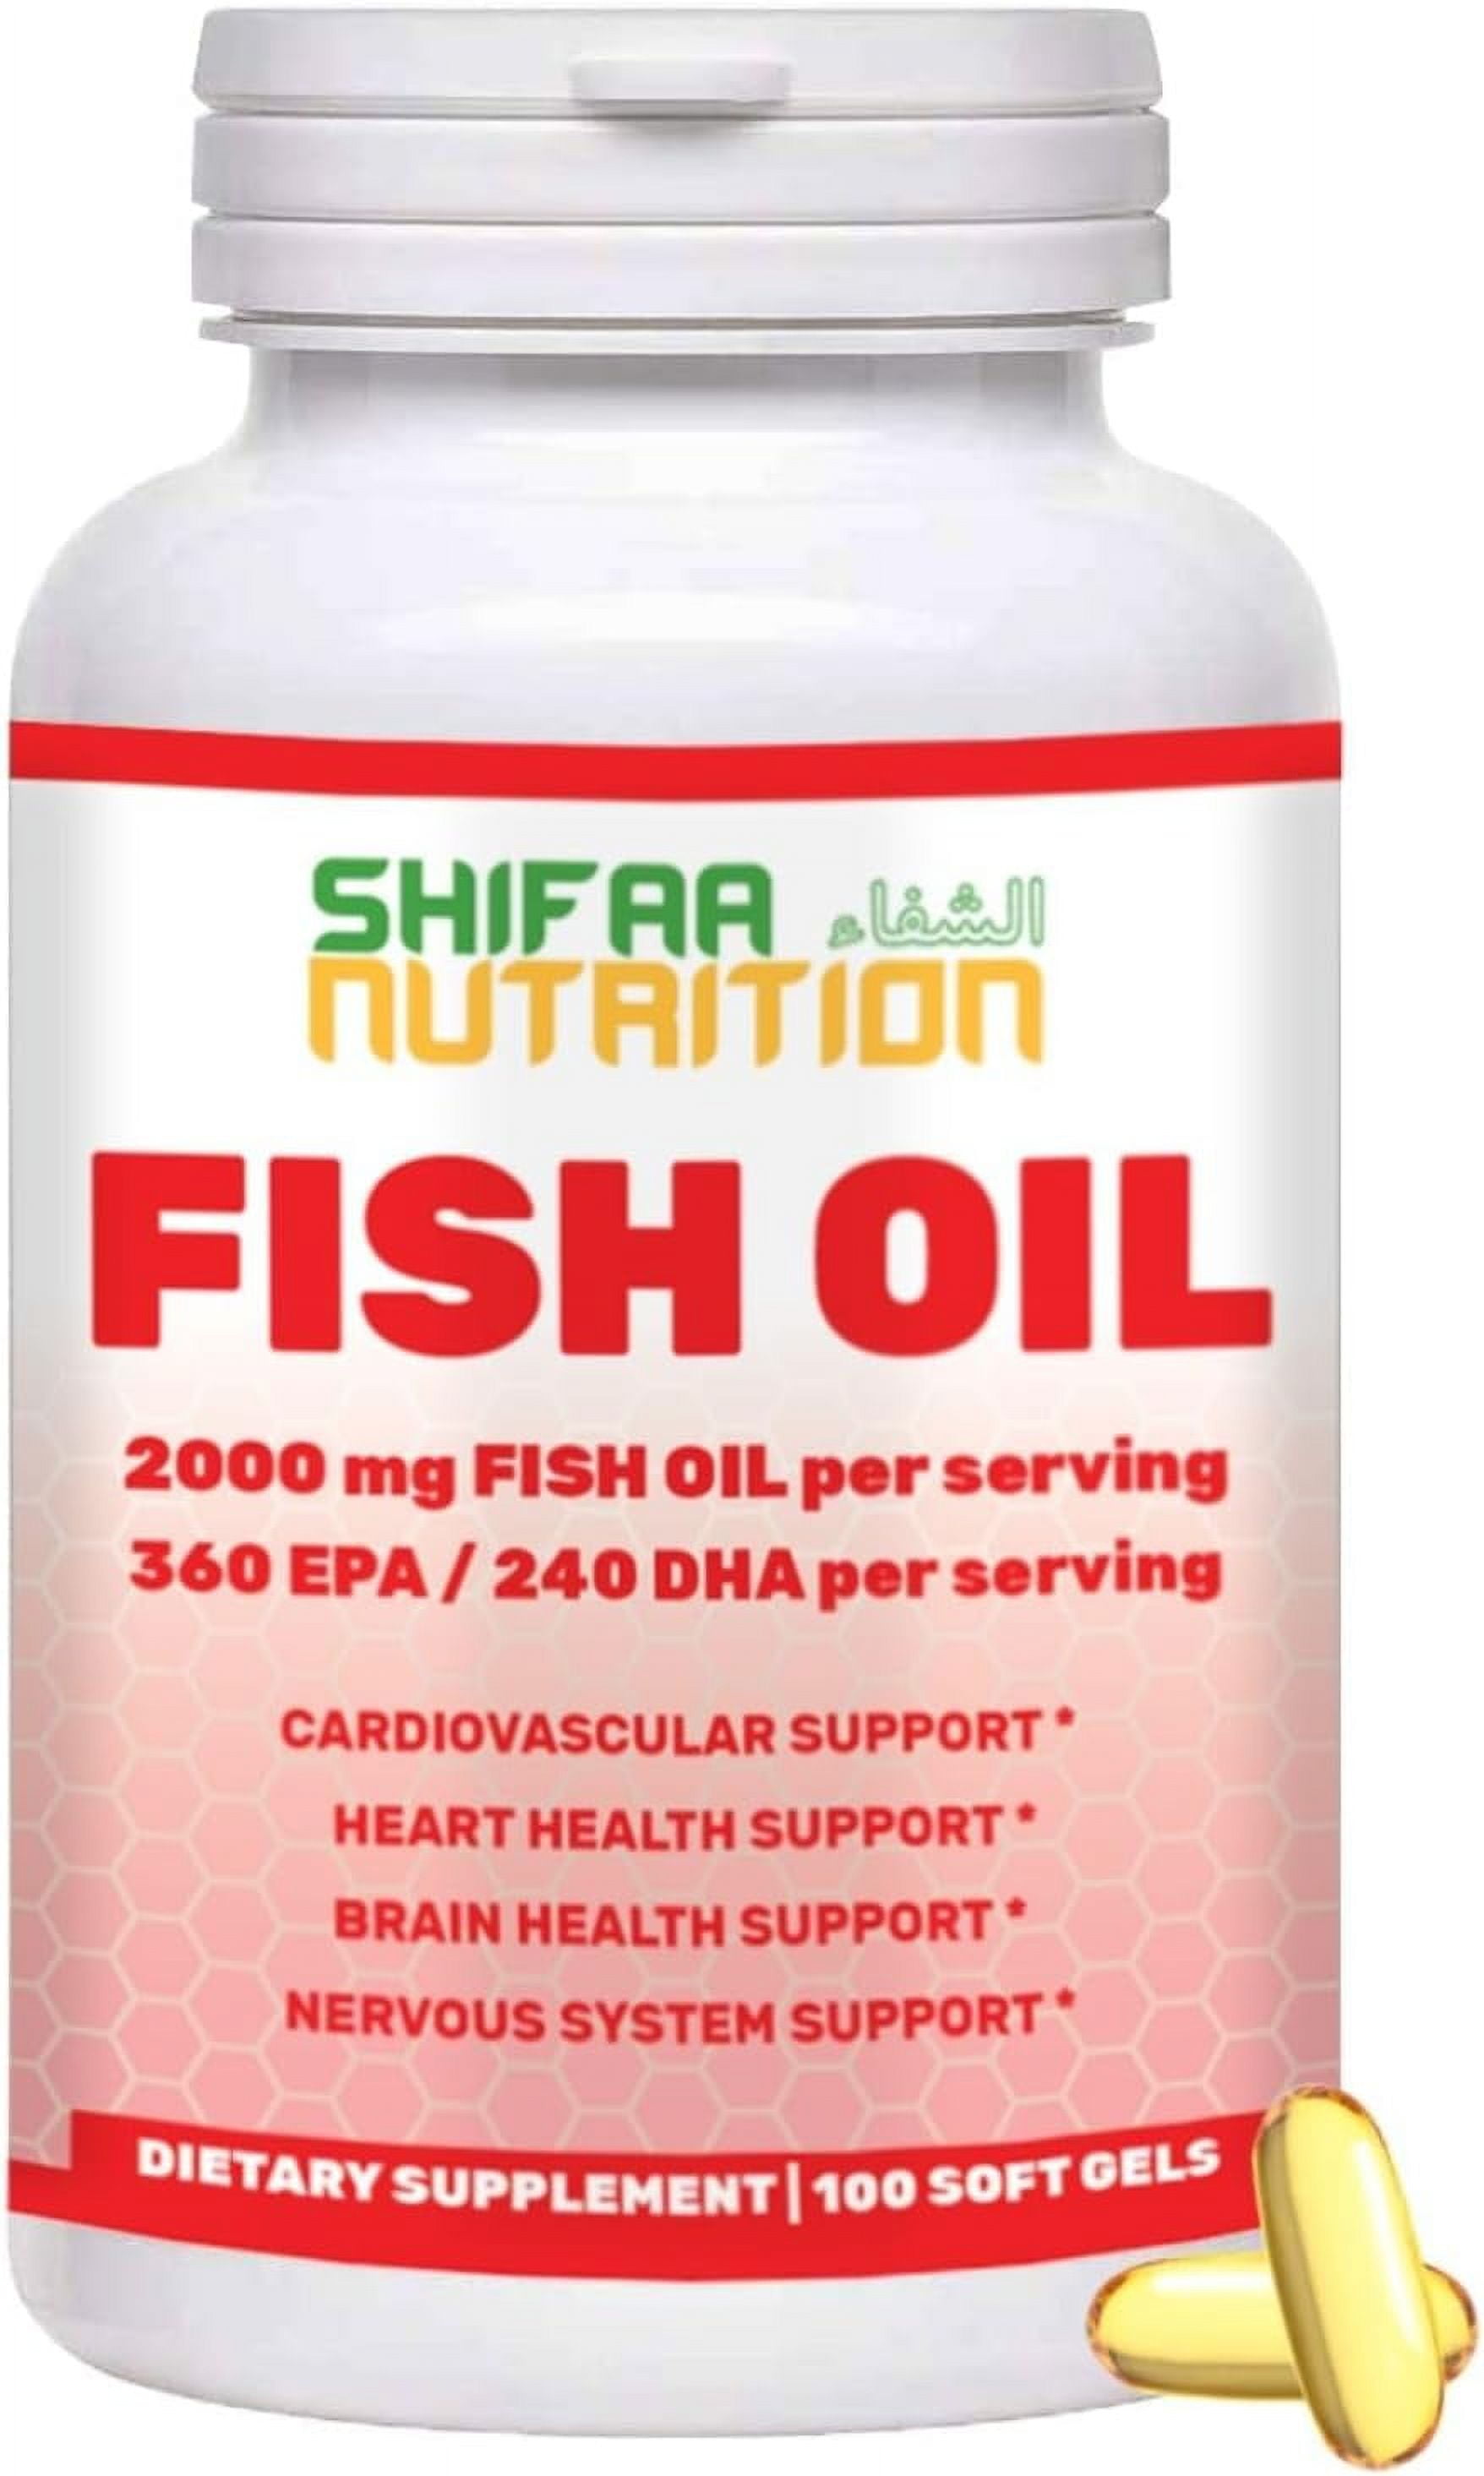 Top Secret Nutrition - Fish Oil & CLA Megablend with Lipase - 120